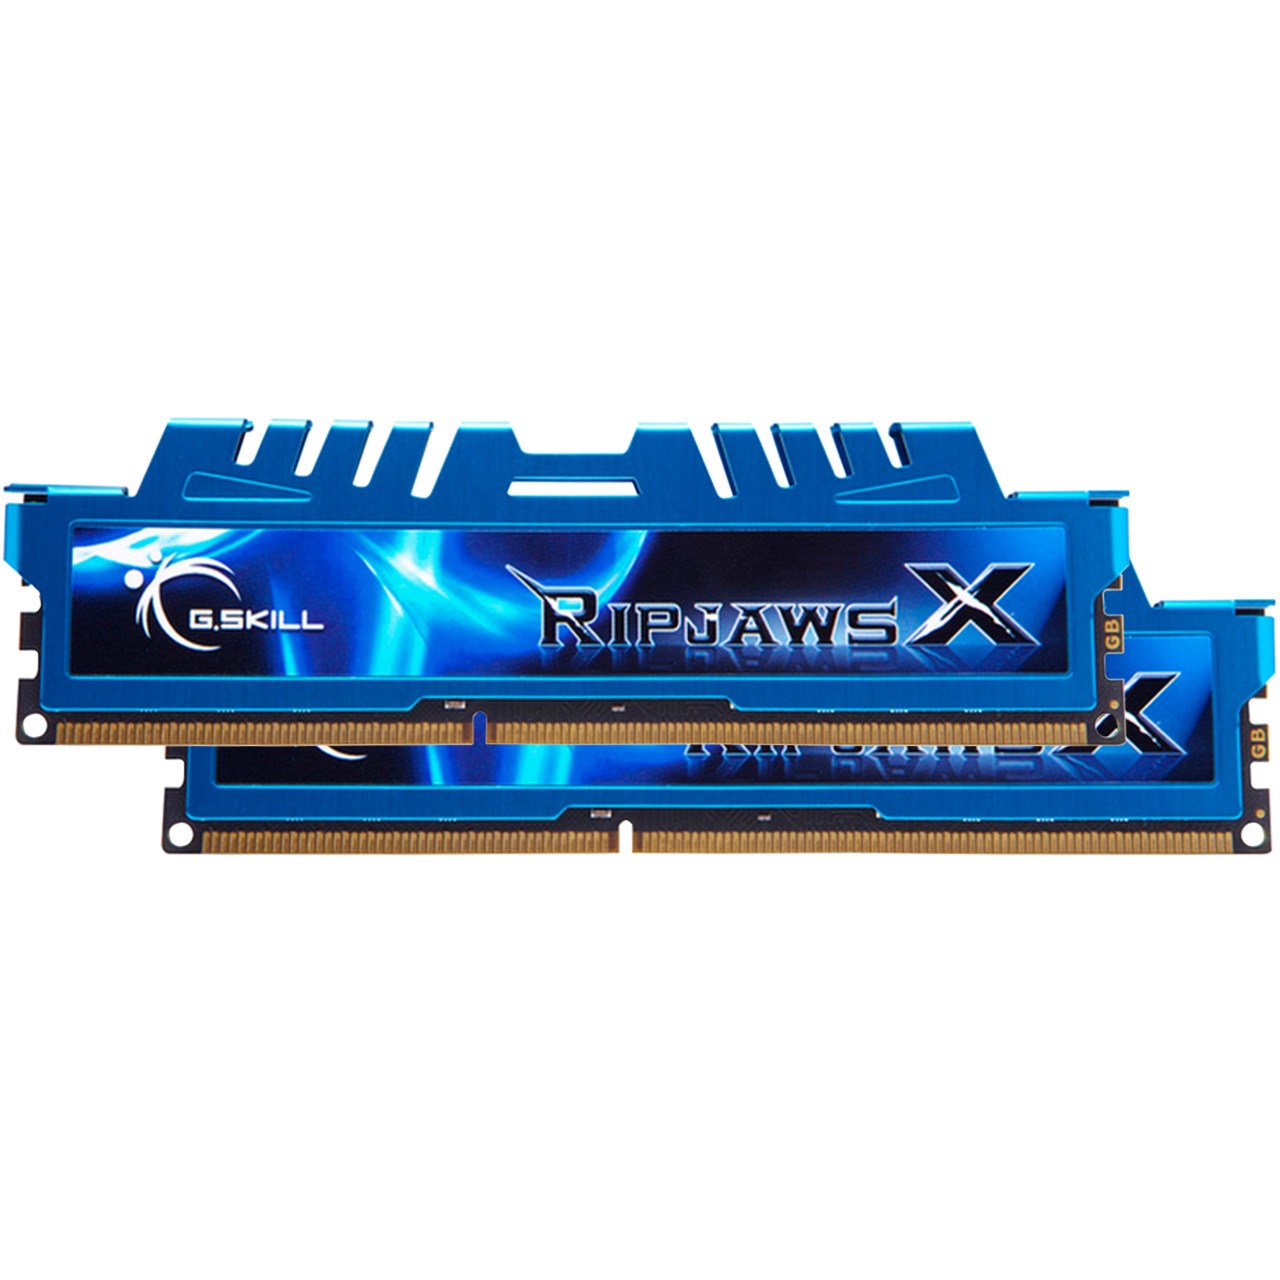 رم دسکتاپ DDR3 دو کاناله 1600 مگاهرتز CL9 جی اسکیل مدل Ripjaws X ظرفیت 16 گیگابایت